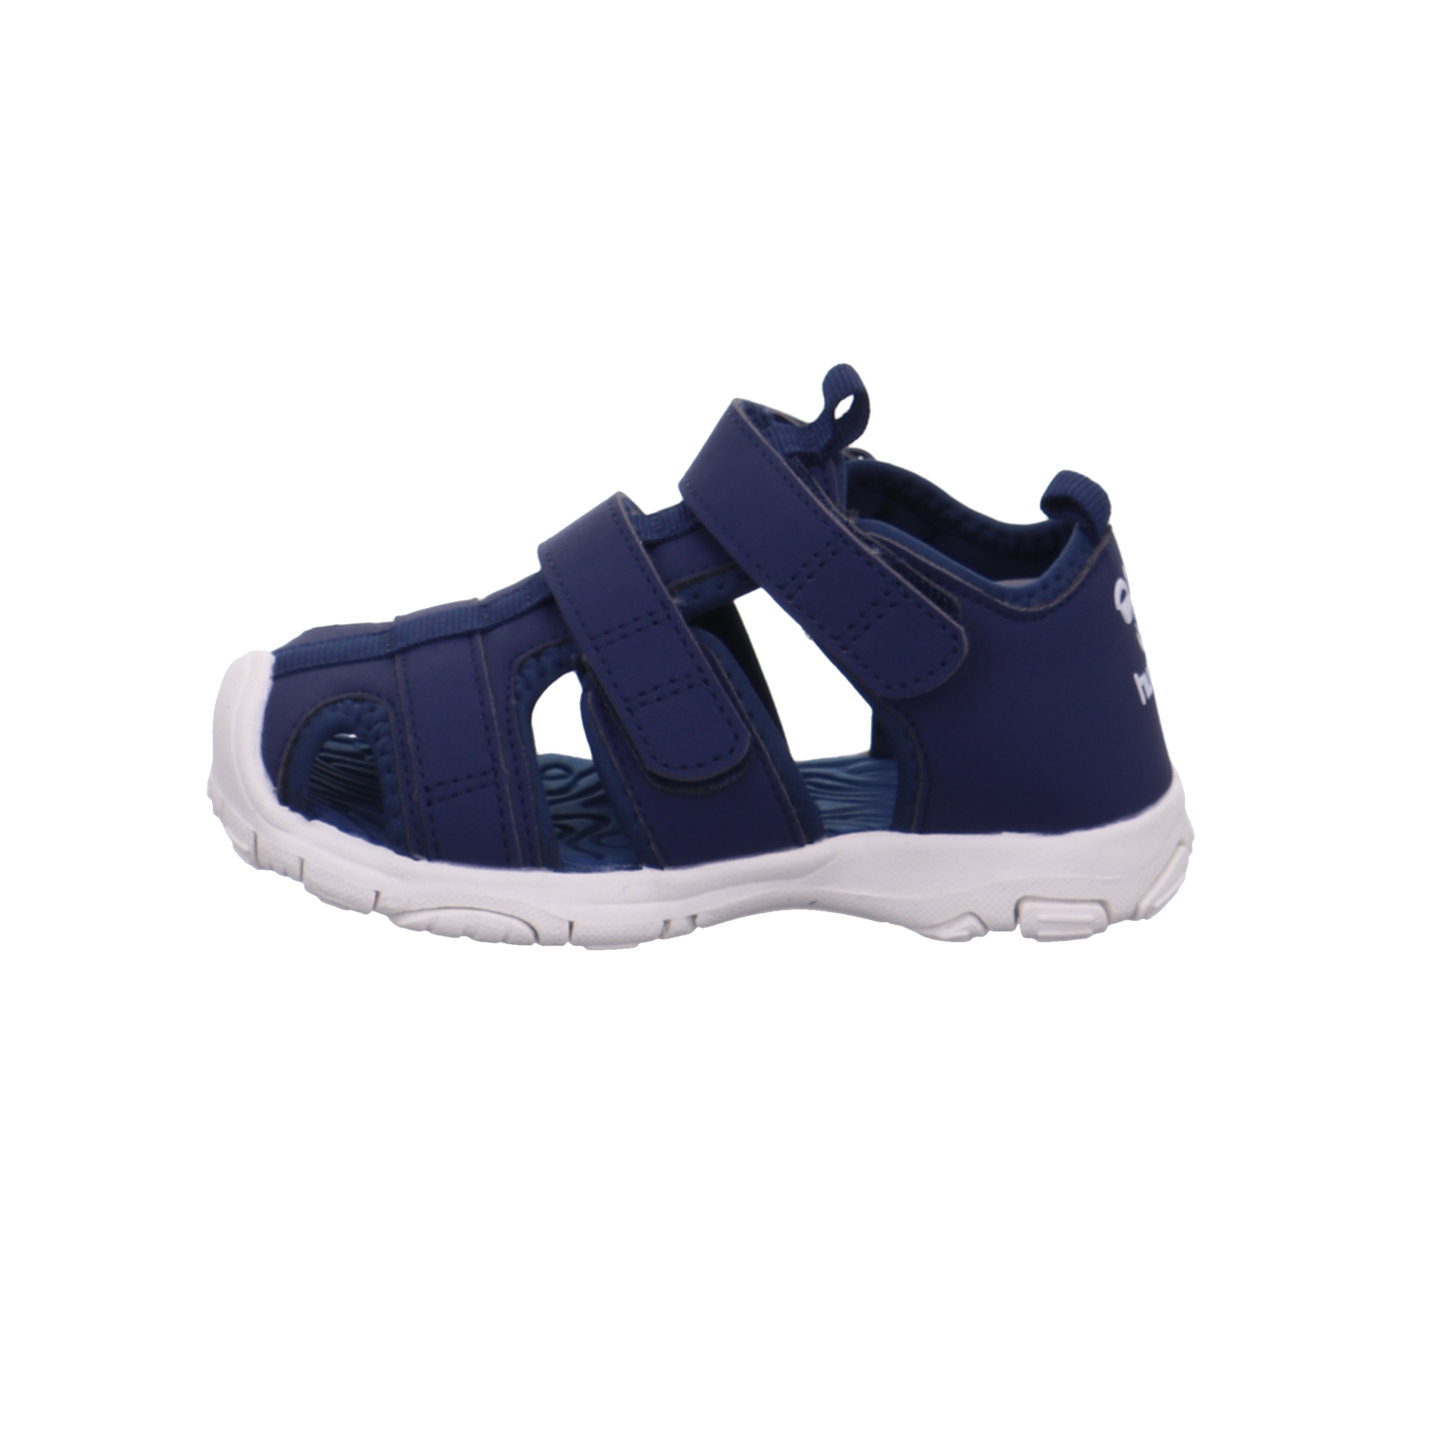 Hummel Offene Schuhe blau Bild1